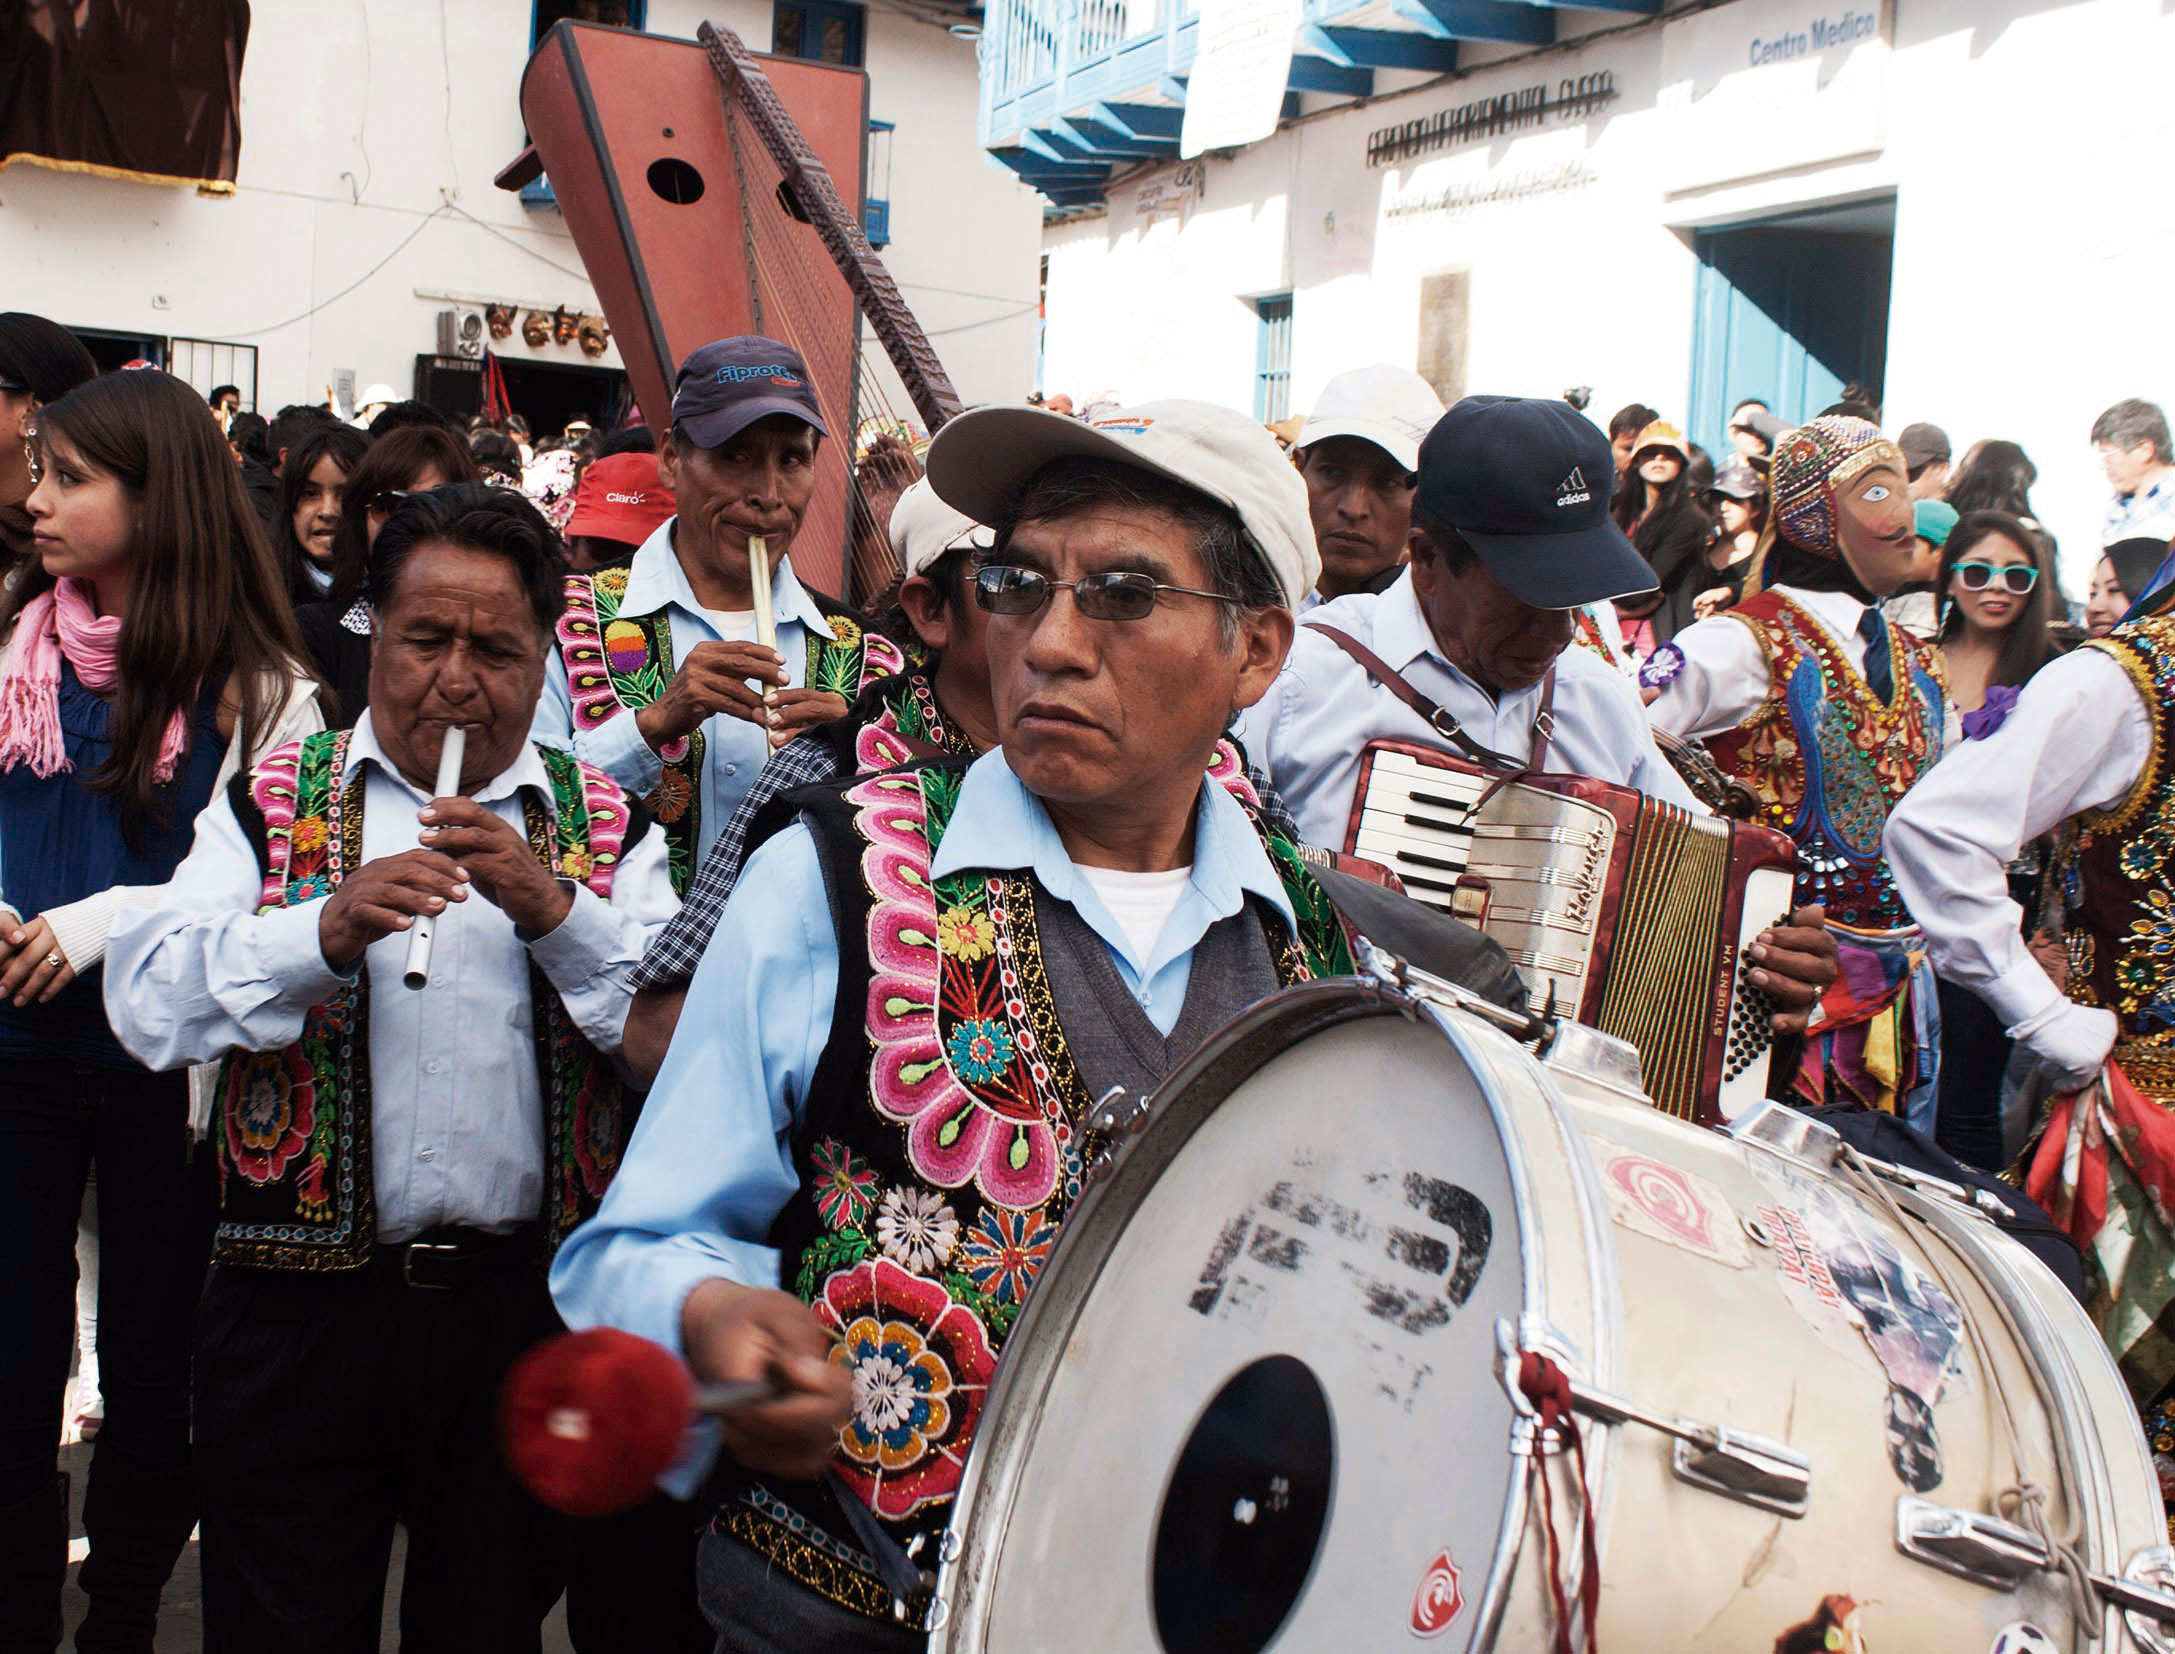  Musique  traditionnelle  des Andes philosophie styles et 